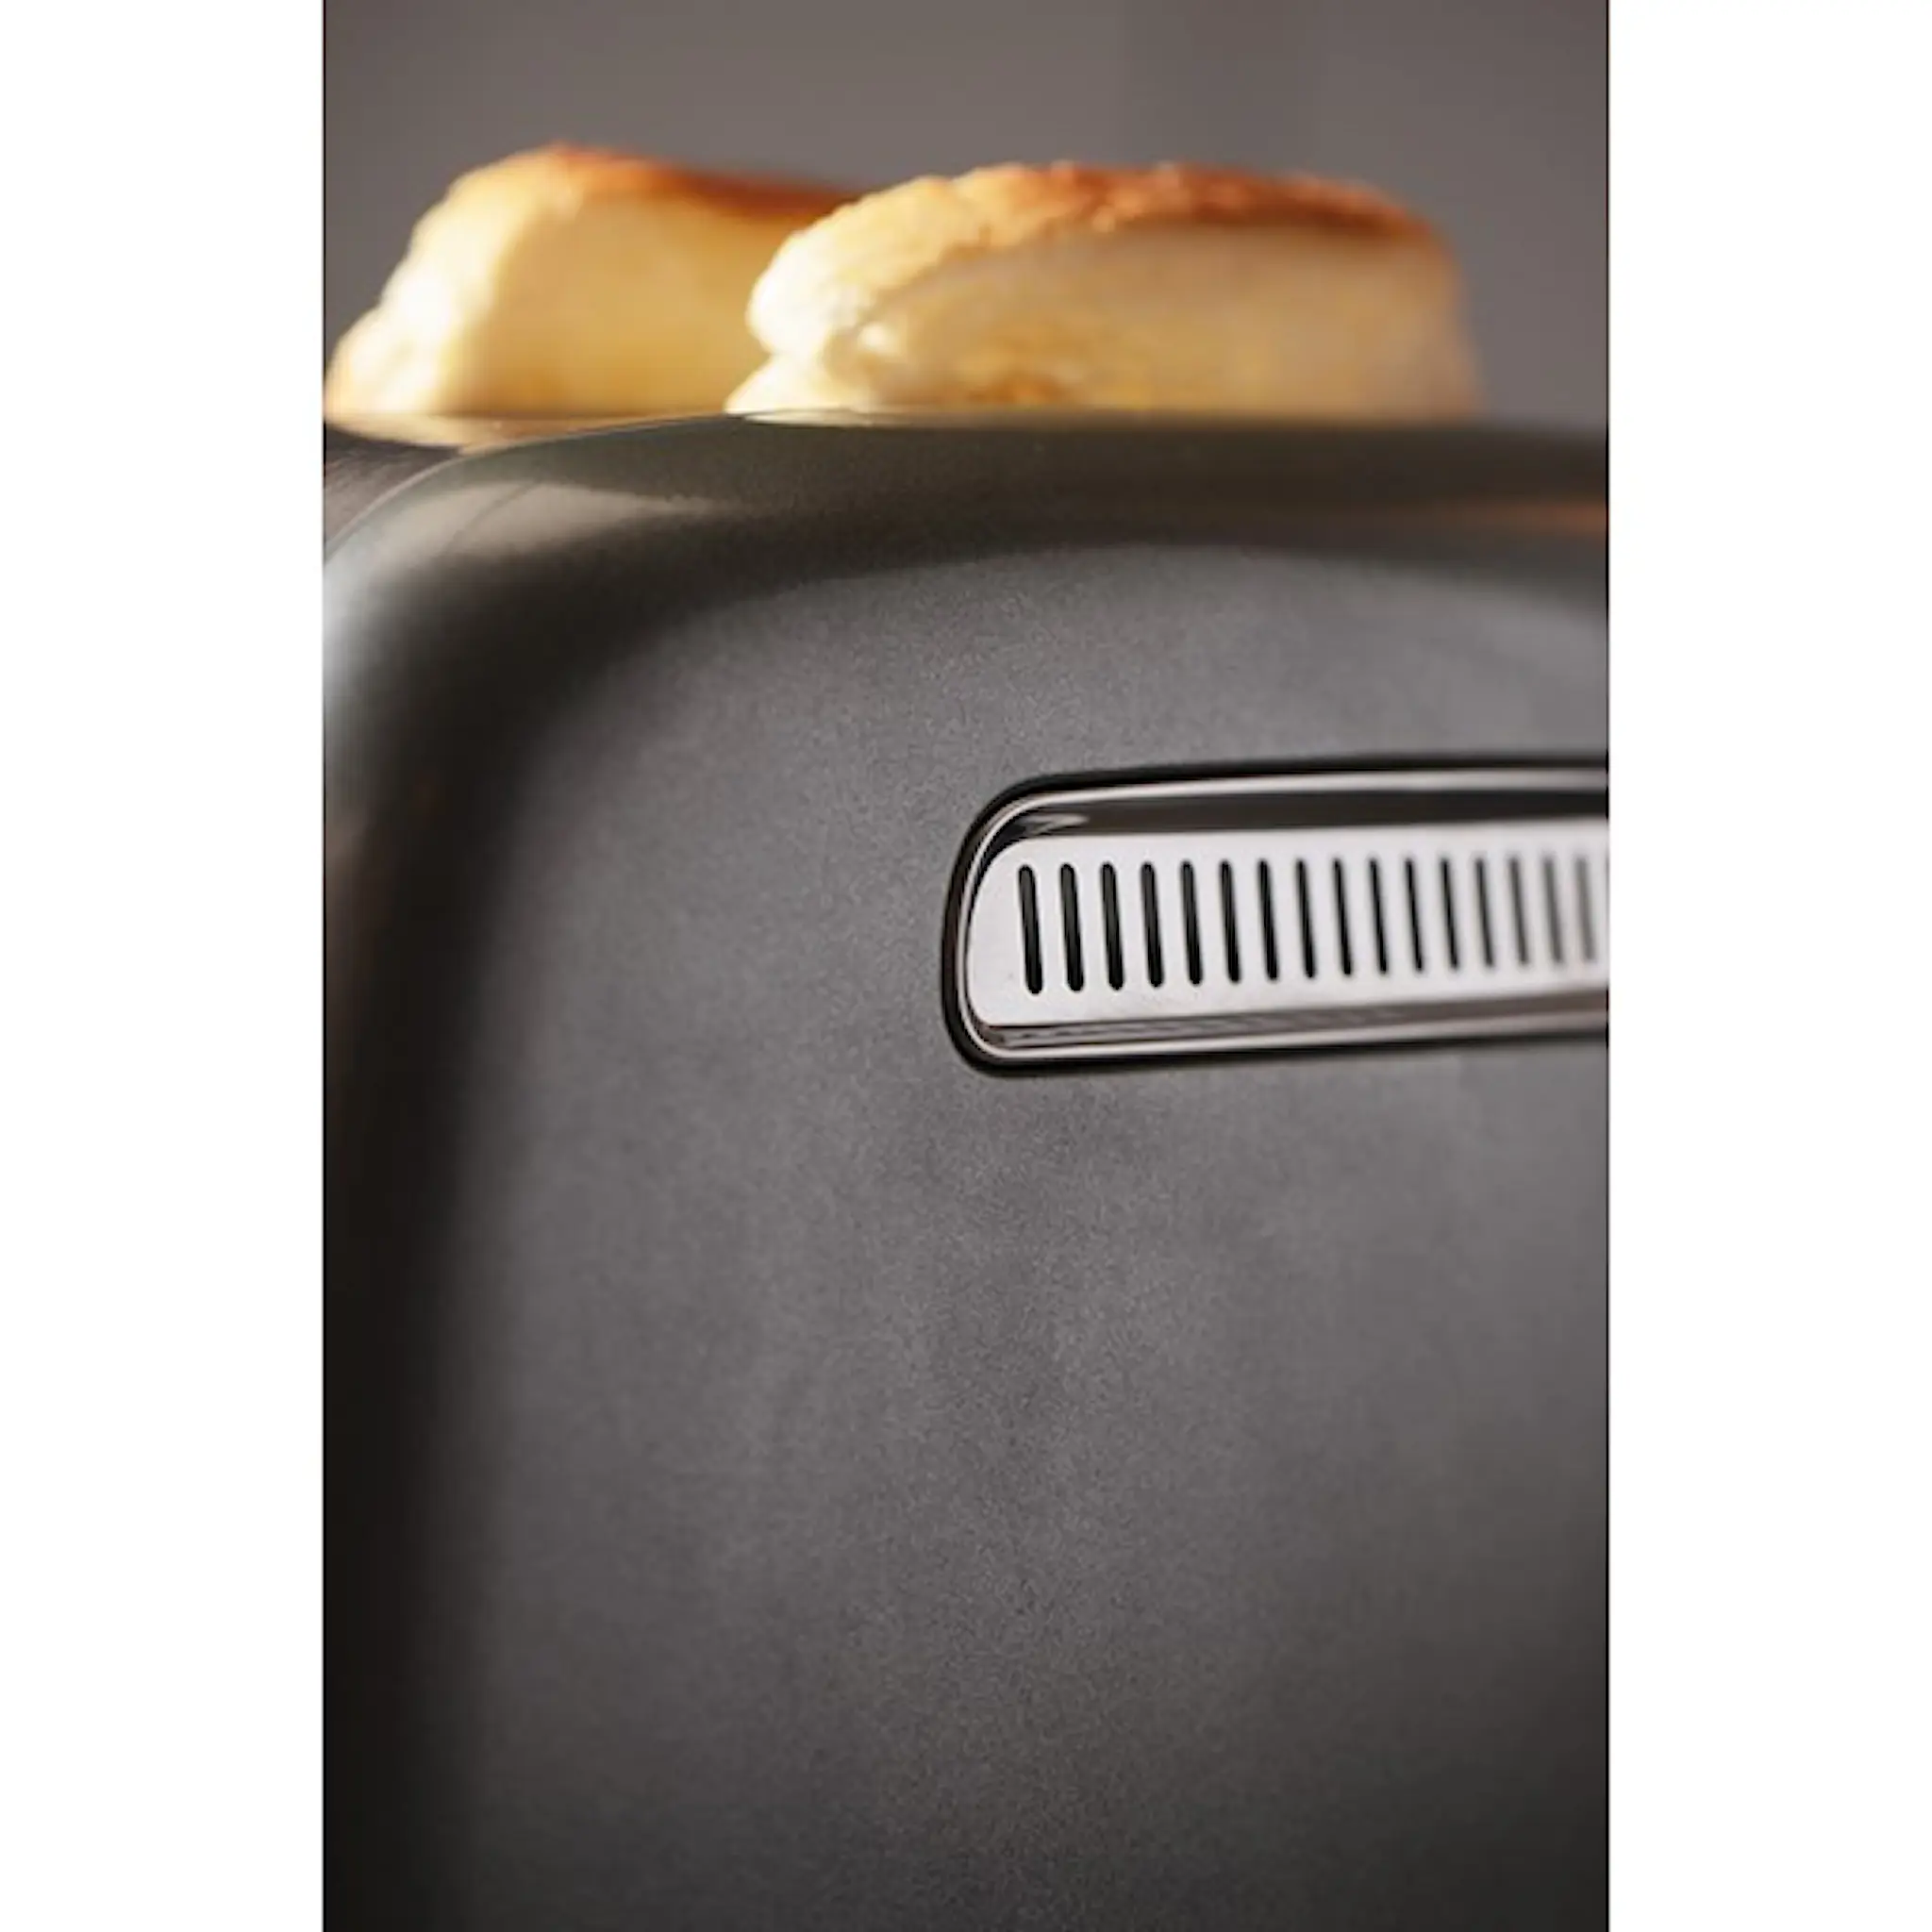 KitchenAid KitchenAid Automaattinen Leivänpaahdin 2 viipaletta Musta